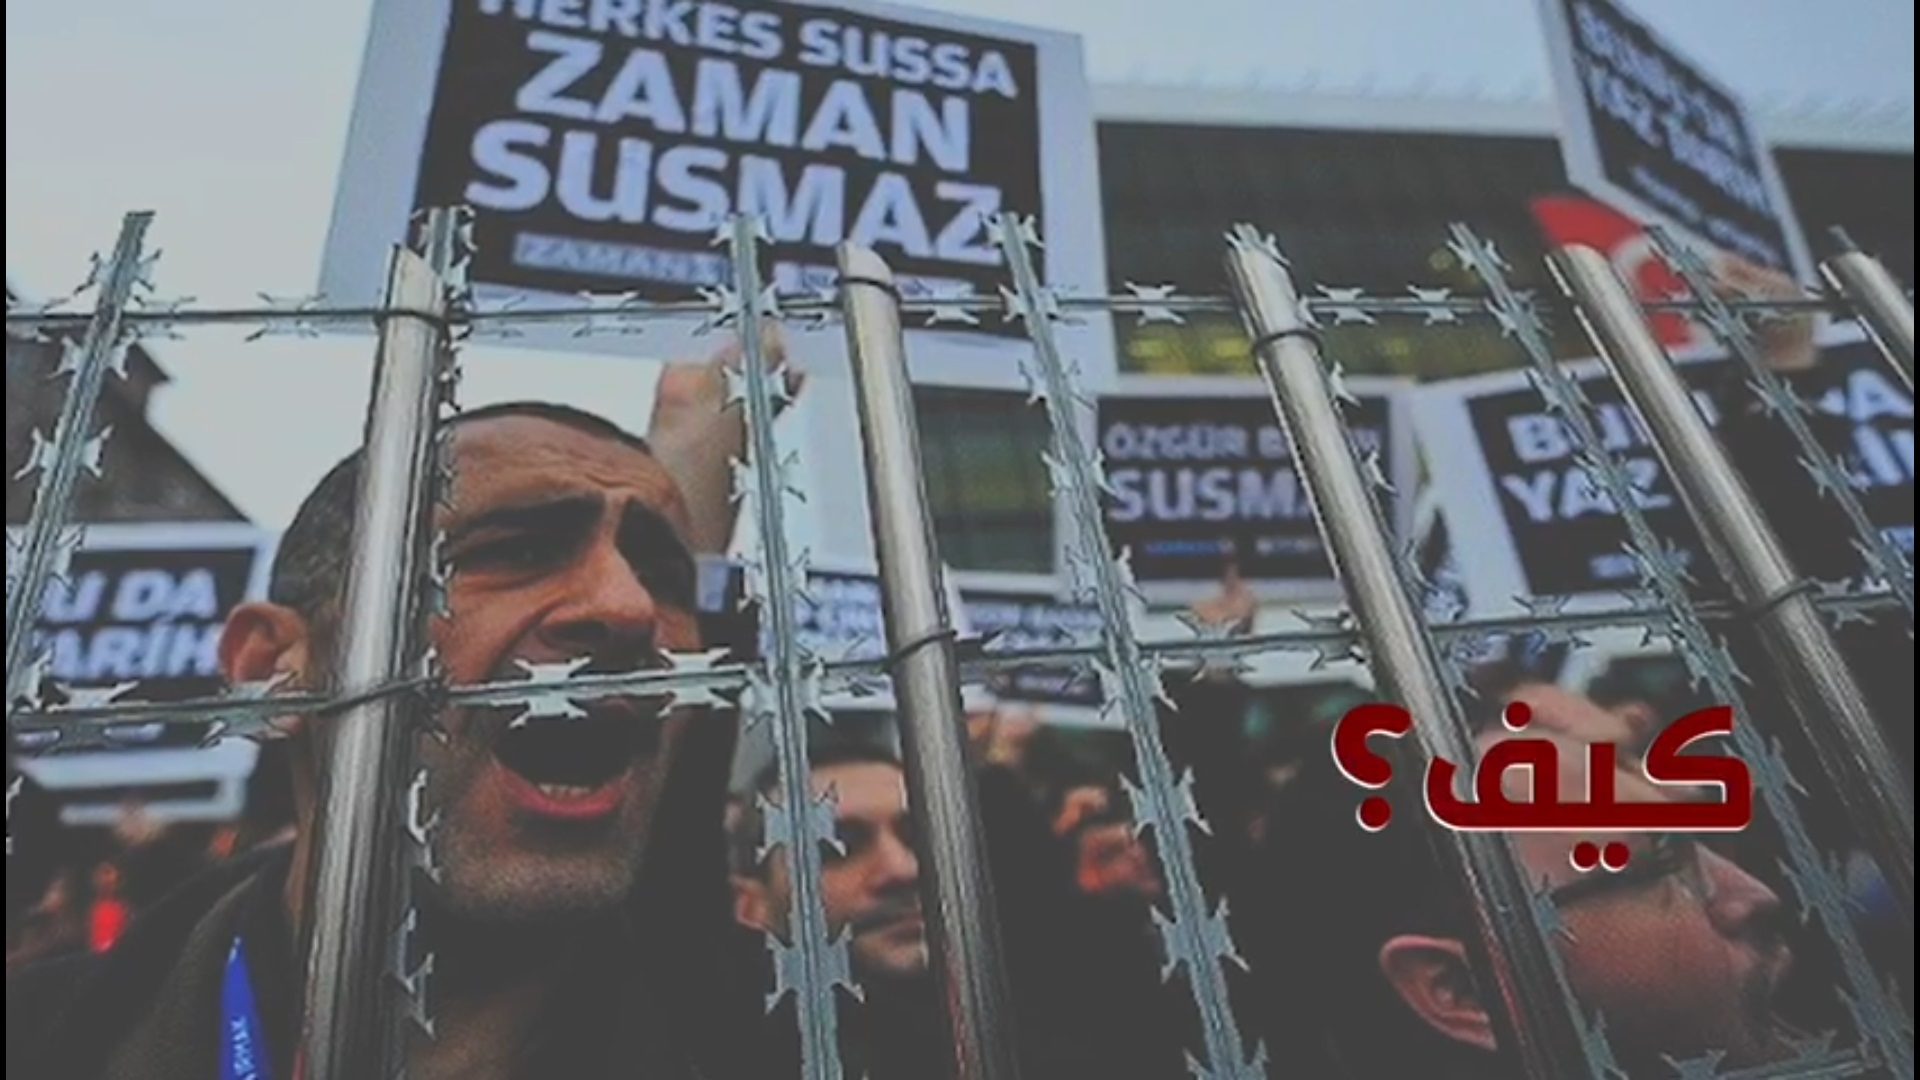 فيديو يفضح التناقضات التركية : تدعي حرية الصحافة وأغلقت 149 مؤسسة إعلامية!